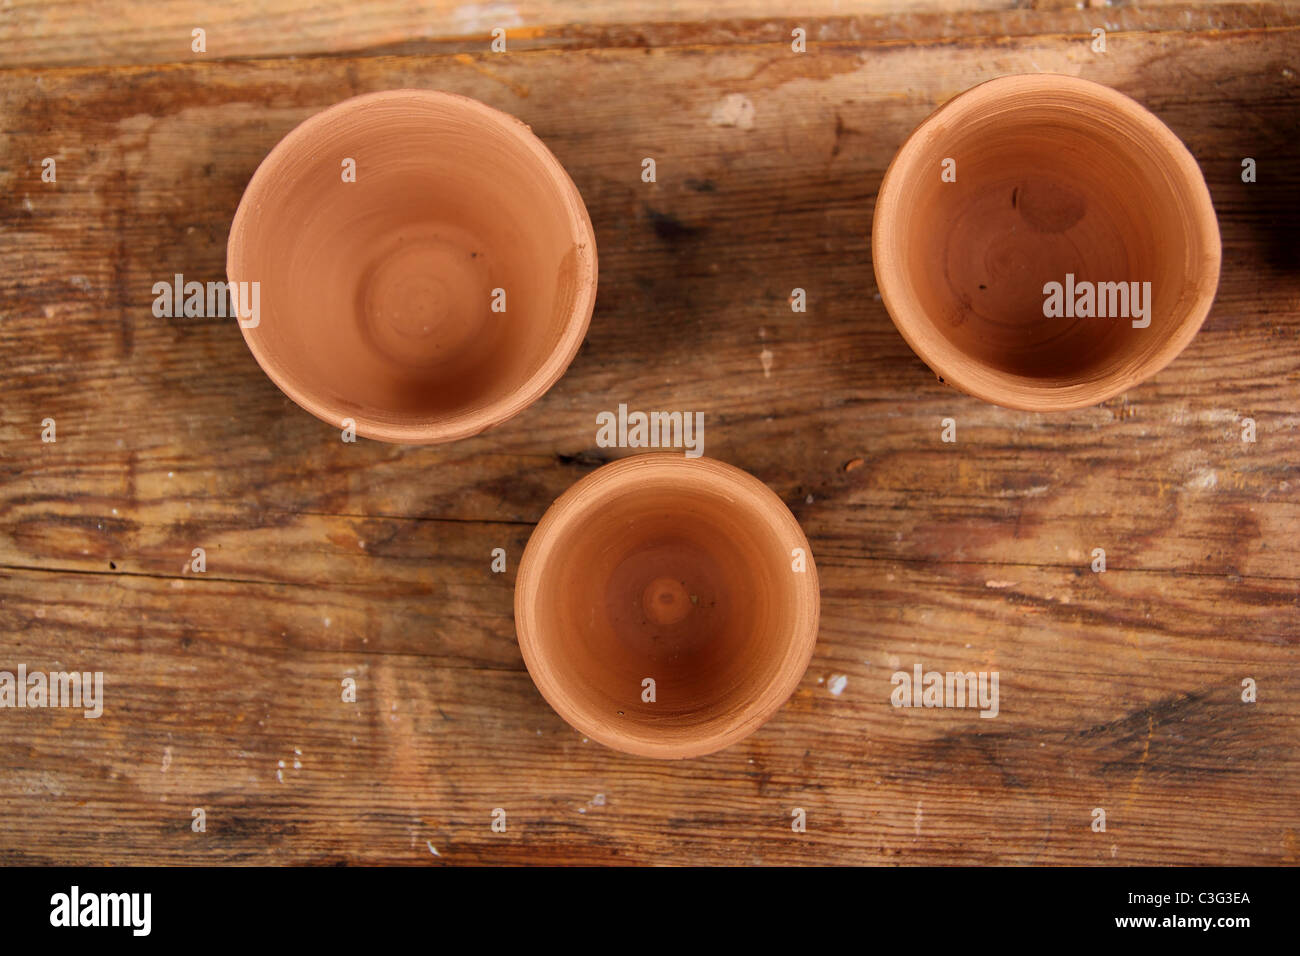 Artesanía cerámica de arcilla studio mesa de madera color cálido trabajo alfarero tradicional Foto de stock